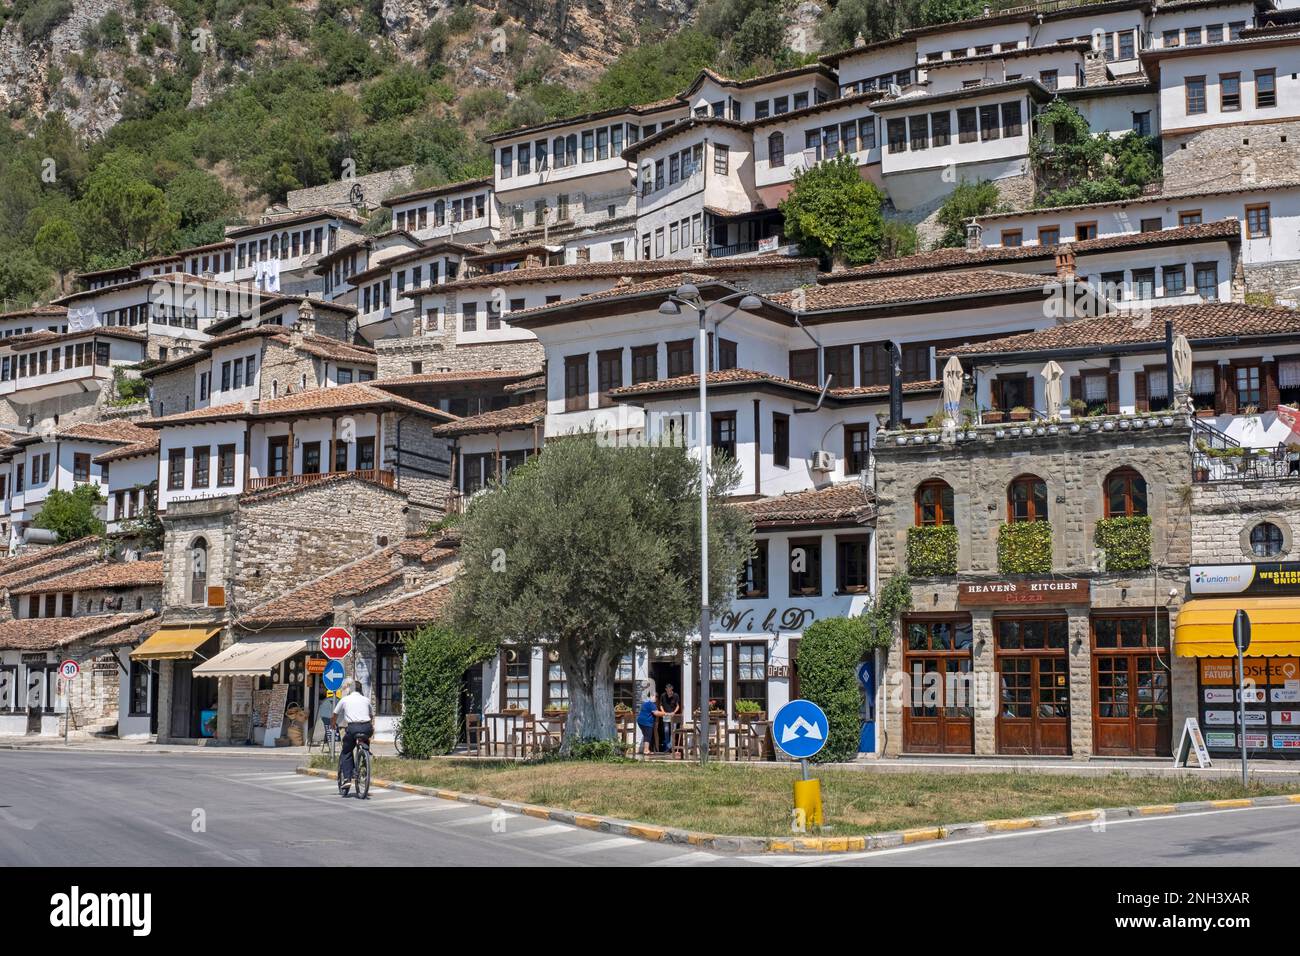 Città di mille finestre, quartiere antico con case ottomane sulla collina lungo il fiume Osum nella città di Berat / Berati, Albania meridionale Foto Stock